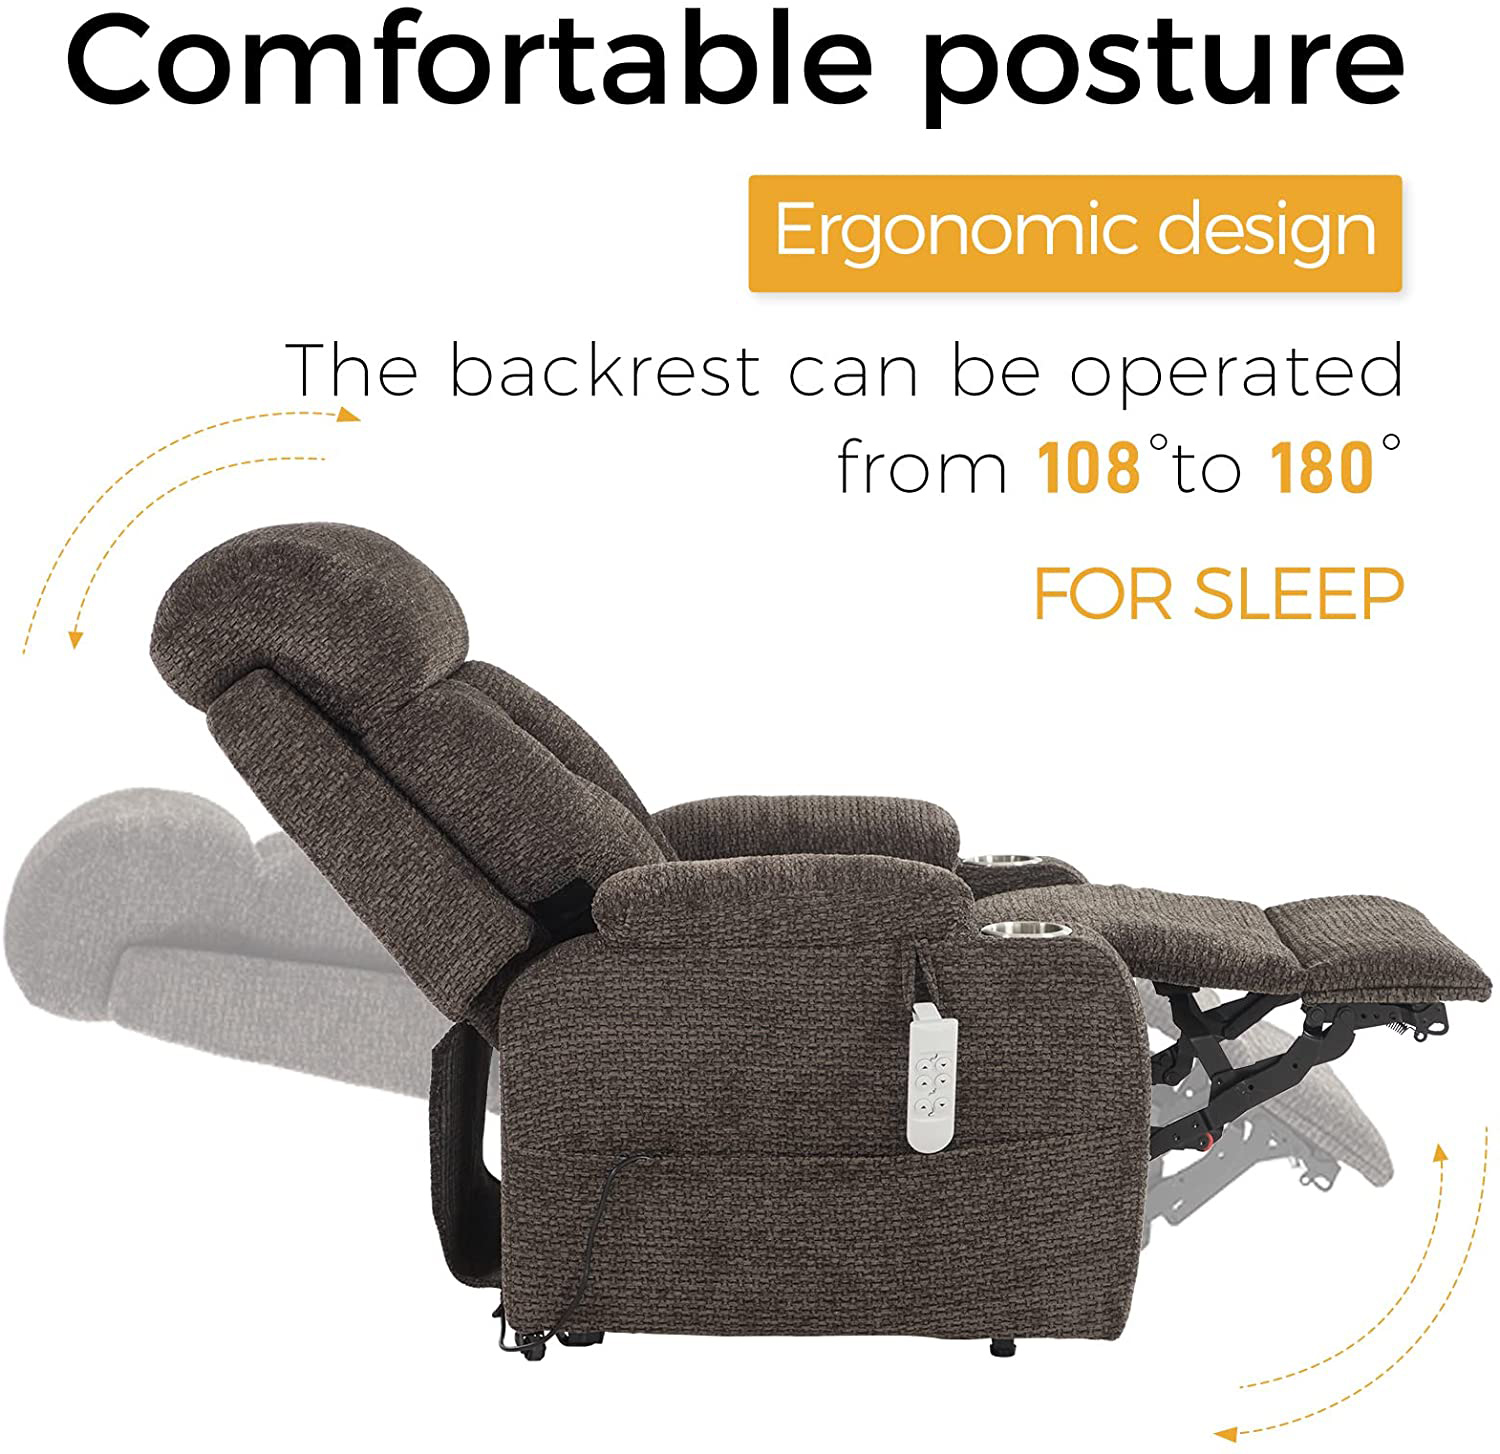 ergonomic design and comfortable recliner